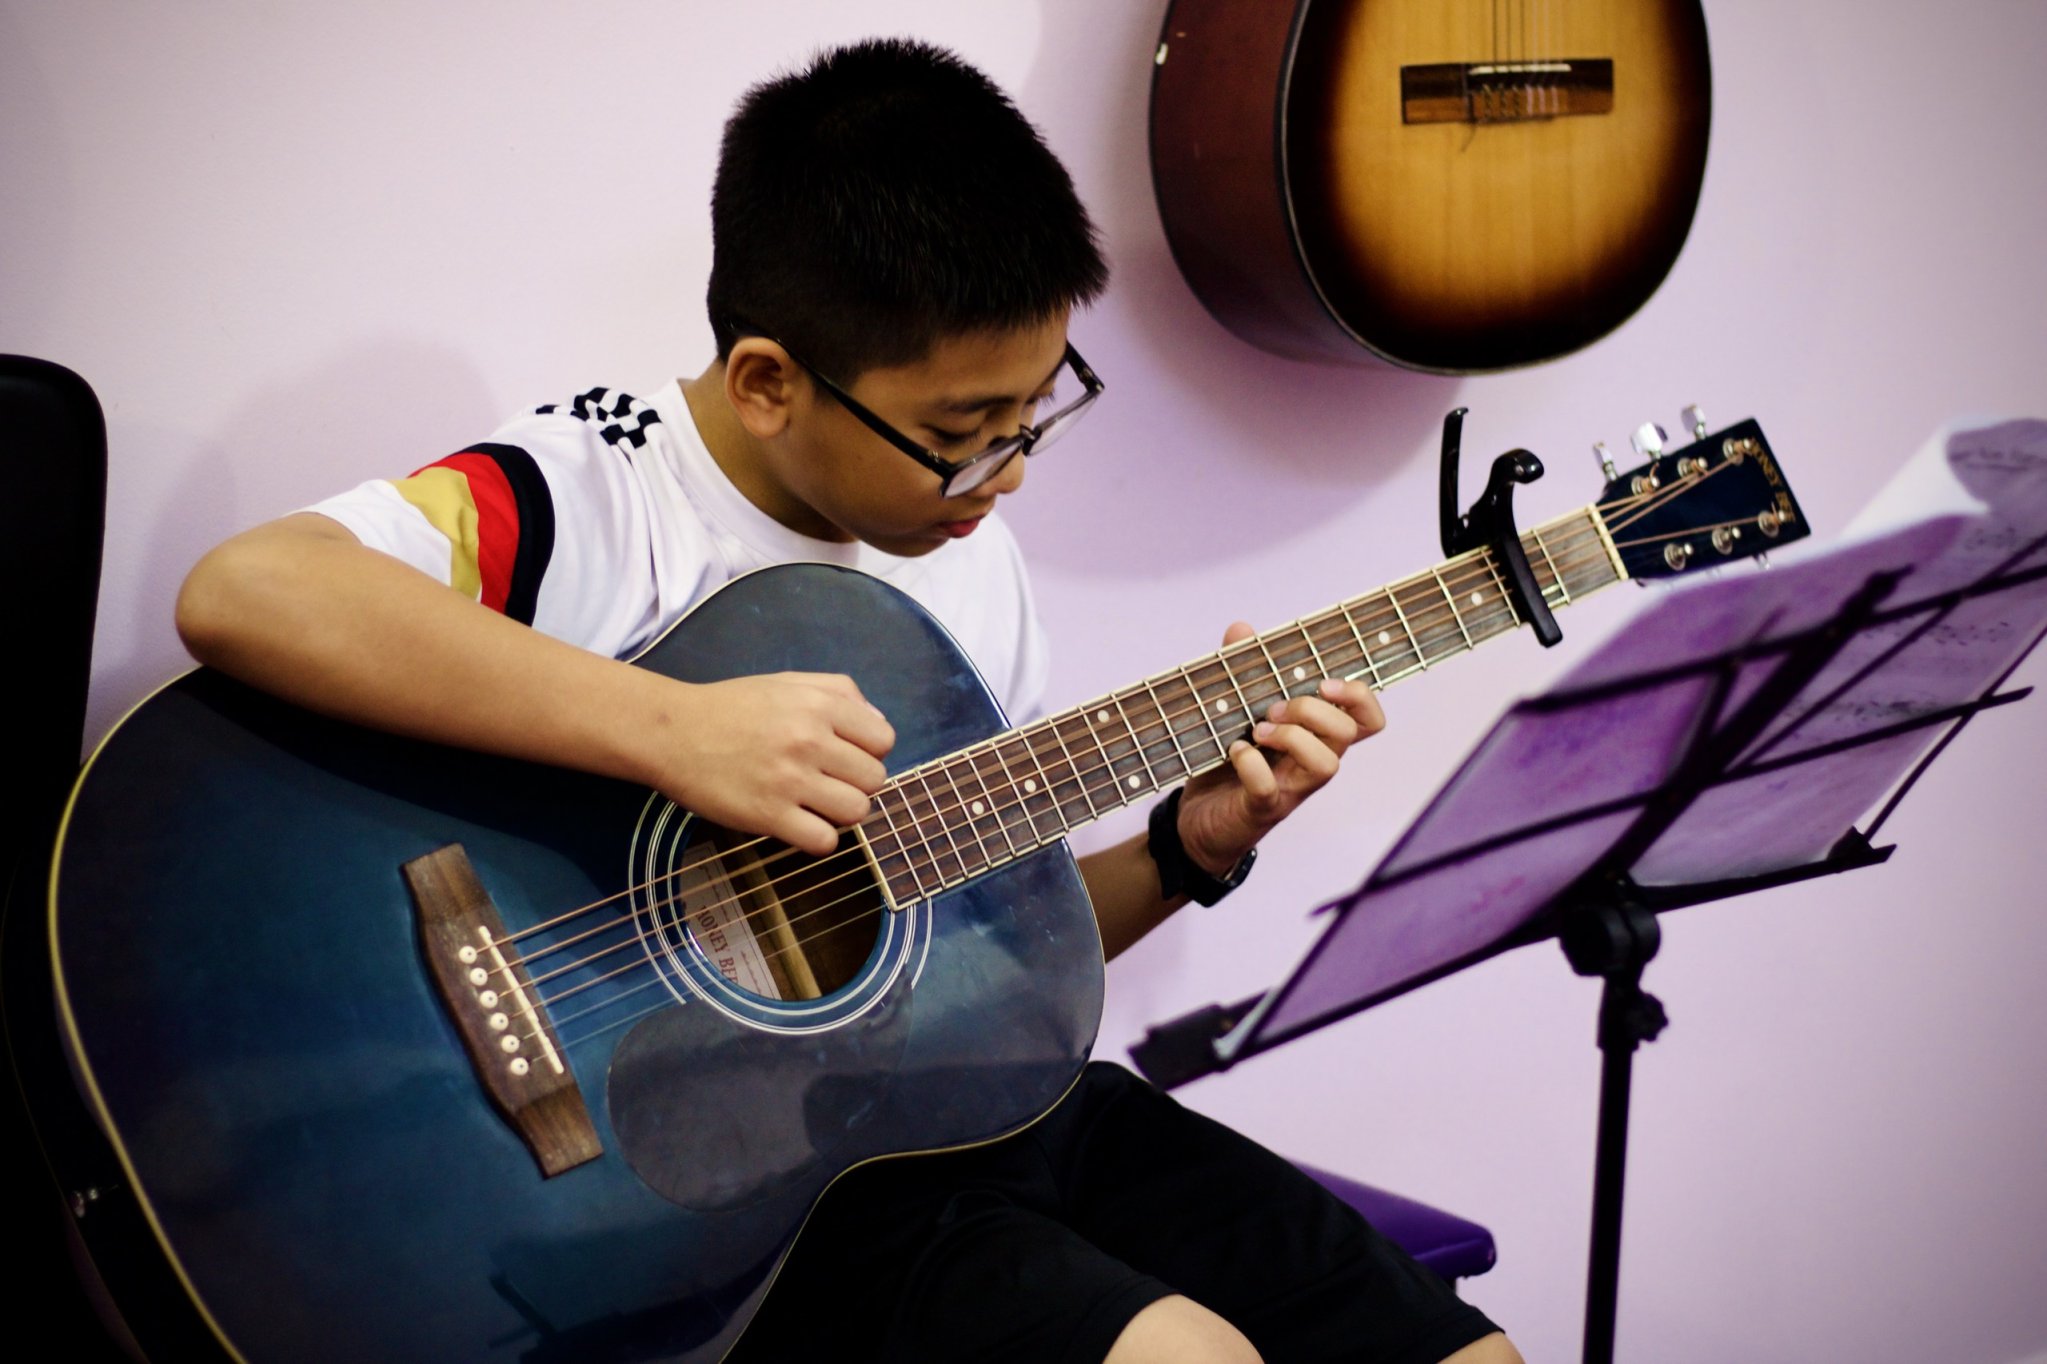 Khóa học đàn guitar online cơ bản cho người mới bắt đầu